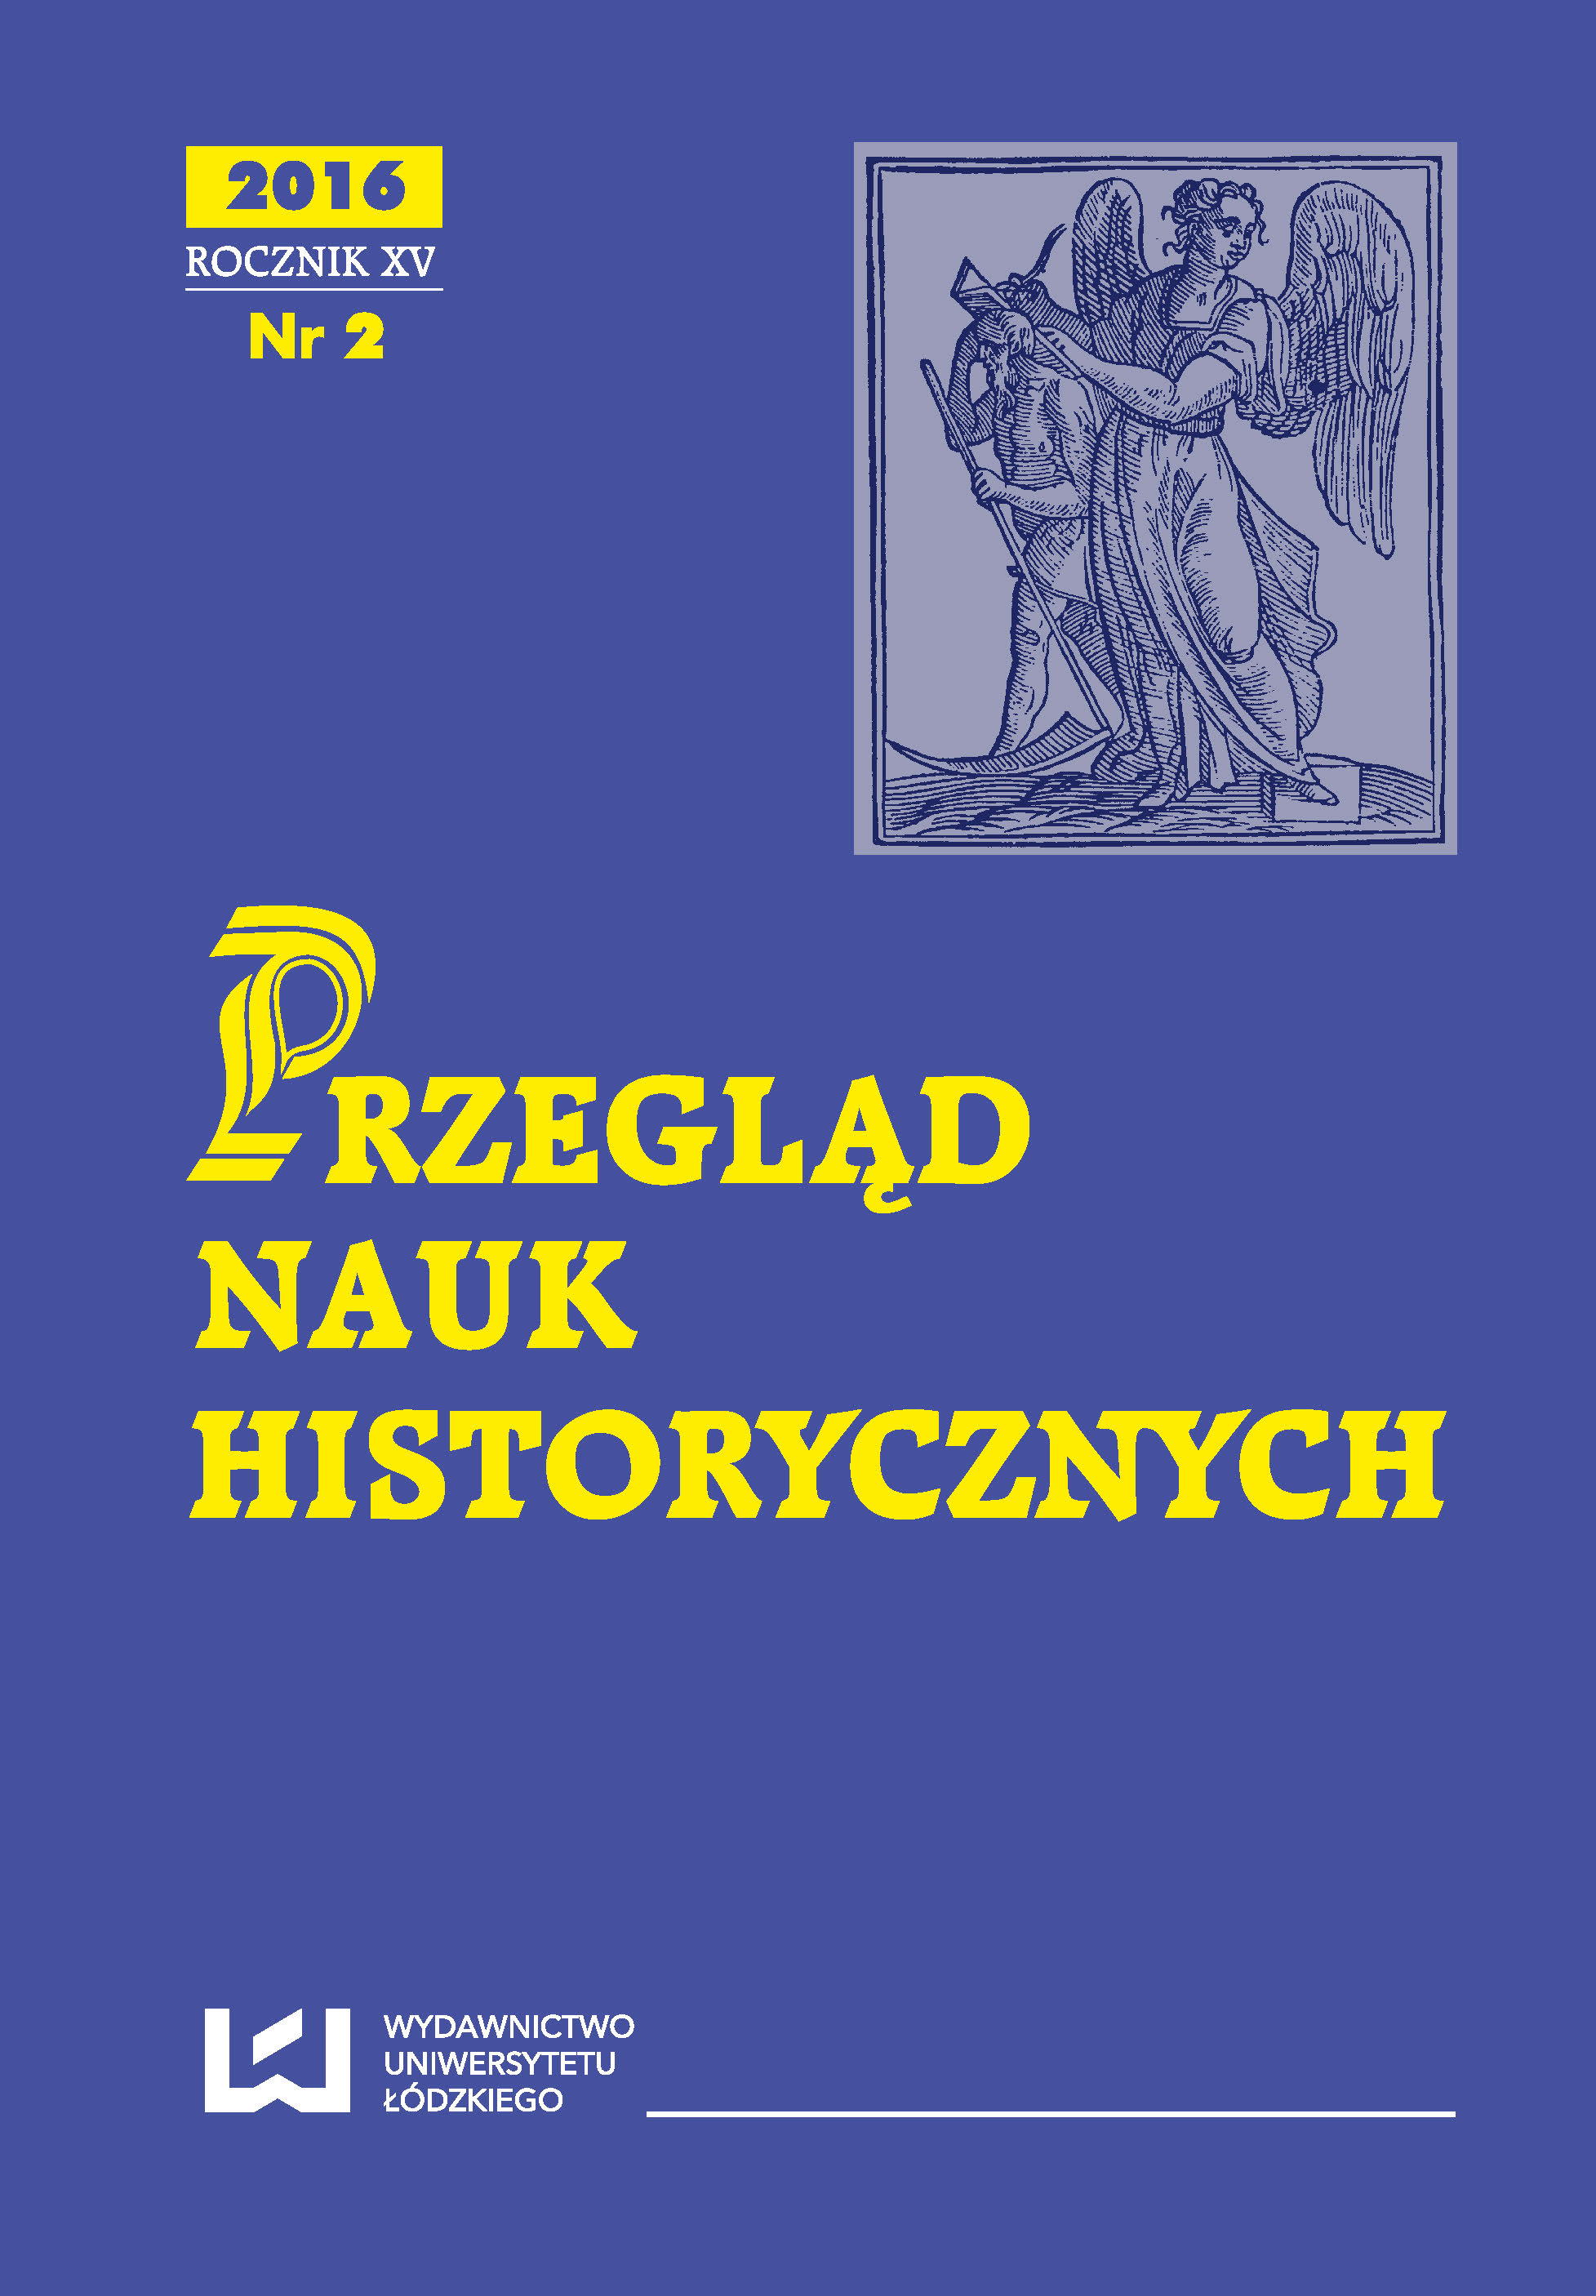 Kościół krakowski 1939–1945, red. Łukasz Klimek, Muzeum Historyczne Miasta Krakowa, Kraków 2014, pp. 264 Cover Image